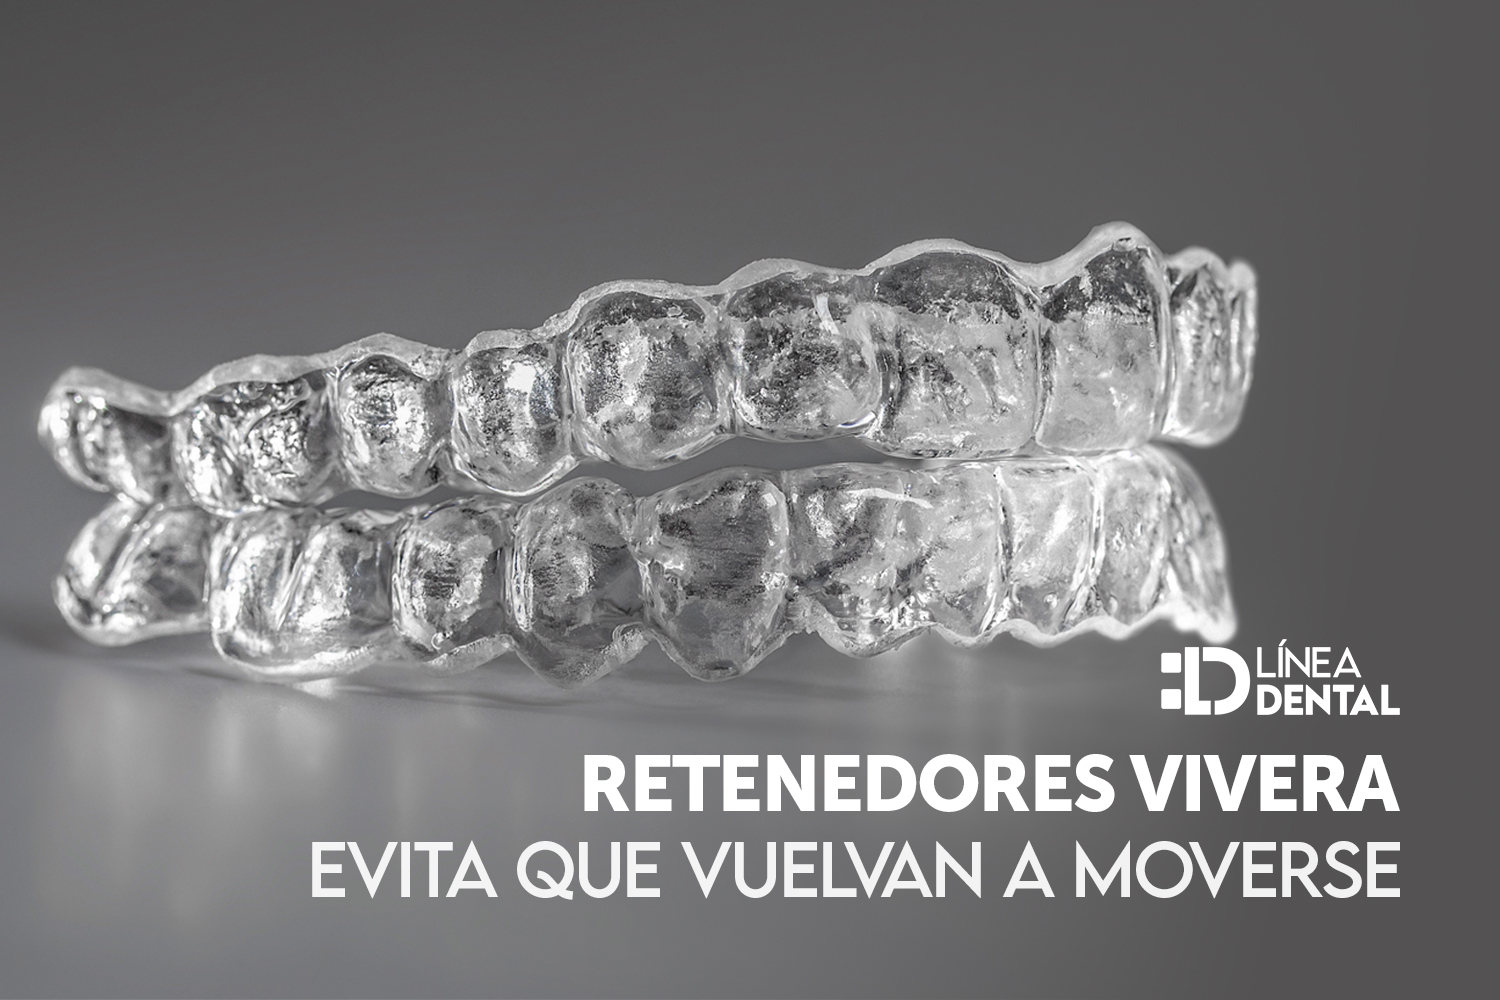 retenedores-dentales-dentista-odontologo-linea-dental-ciudad-real-miguelturra